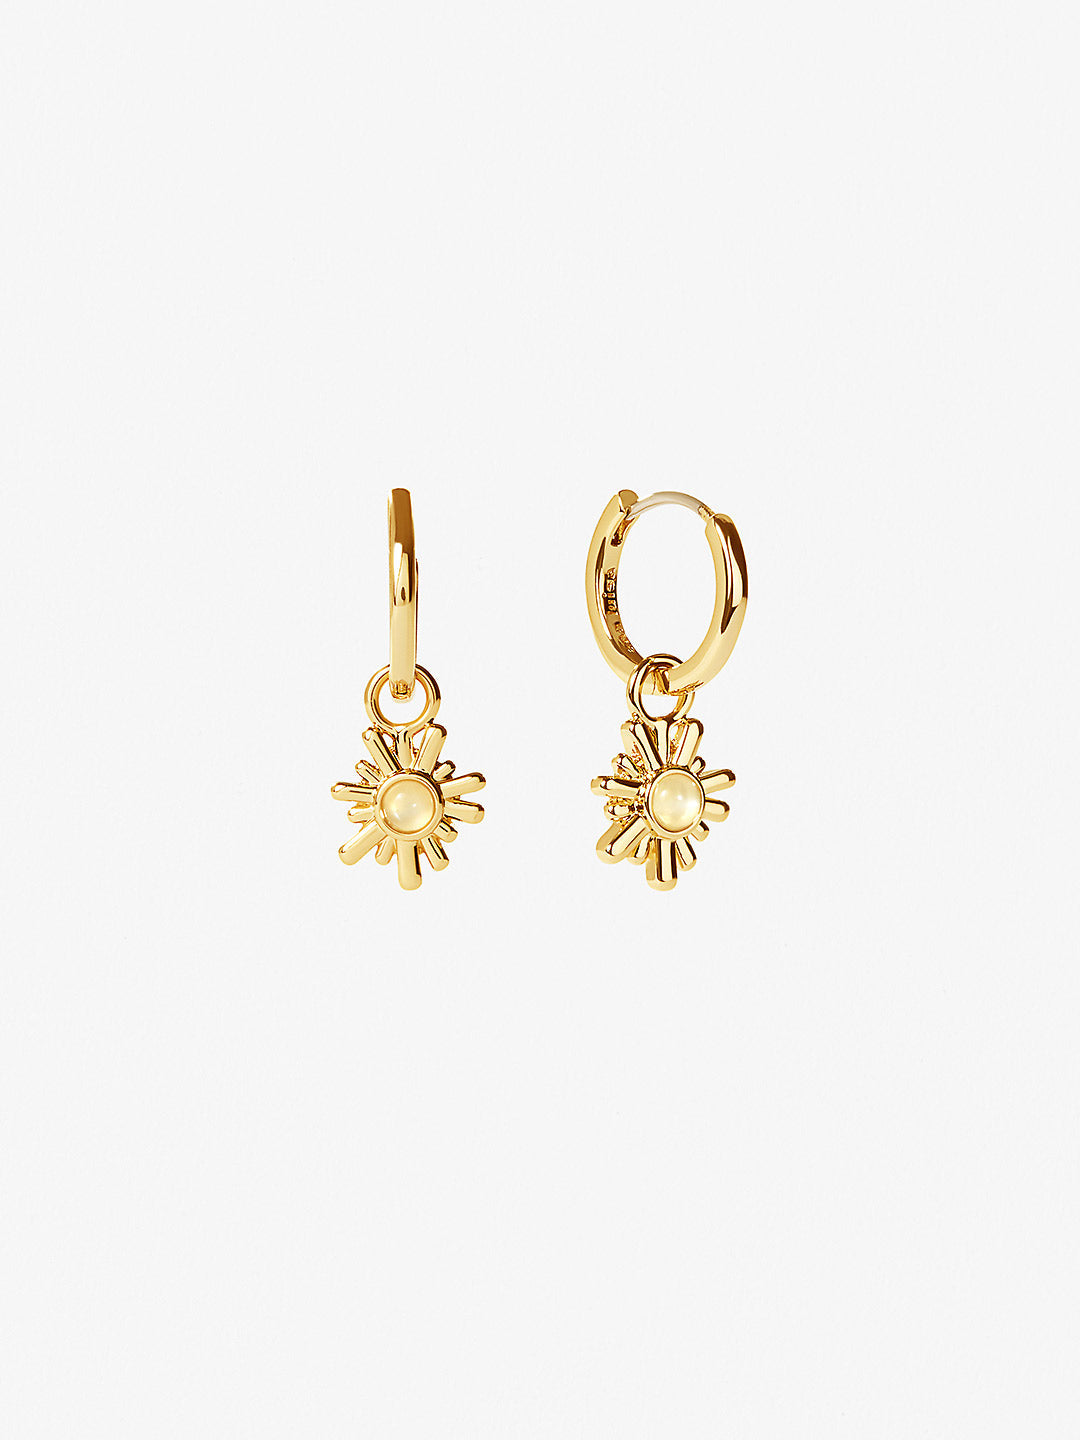 Ana Luisa Jewelry Earrings Hoops Earrings Moonstone Huggie Hoops Riviera Gold